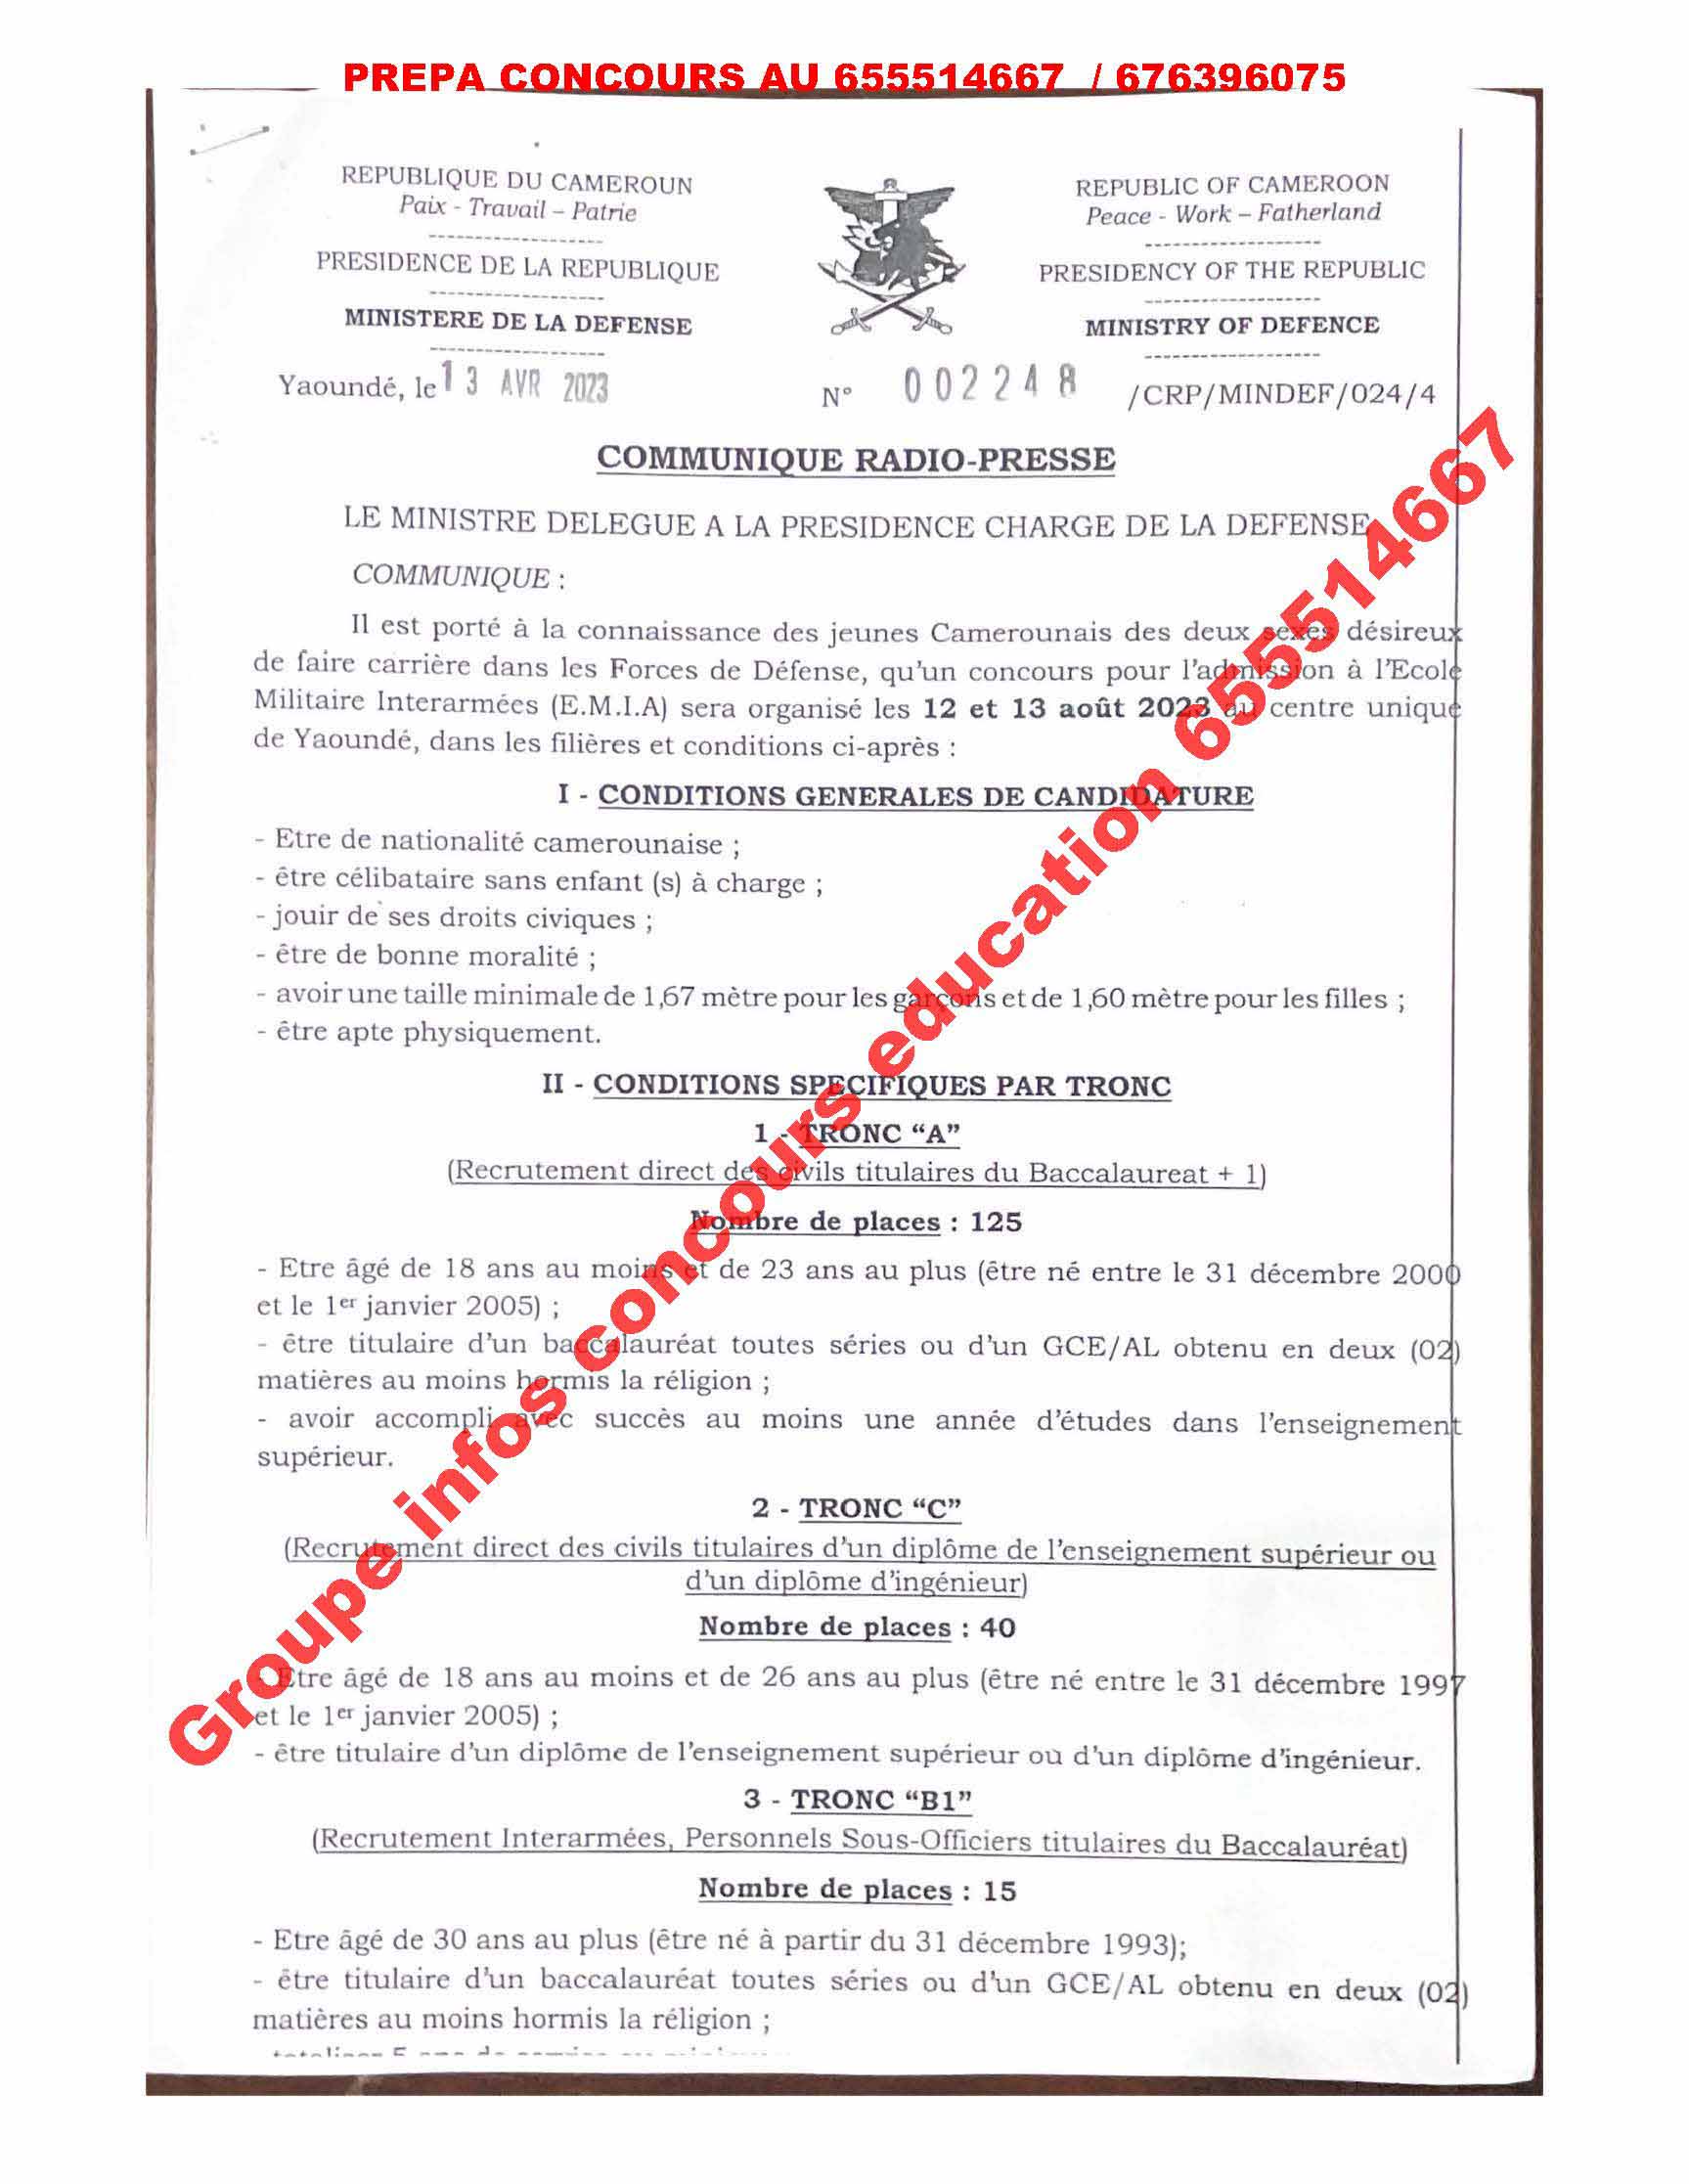 Un Concours pour l'admission â l'Ecole Militaire Interarmées (E.M .I.A) sera organisé les 12 et 13 août 2023 au centre unique de Yaoundé